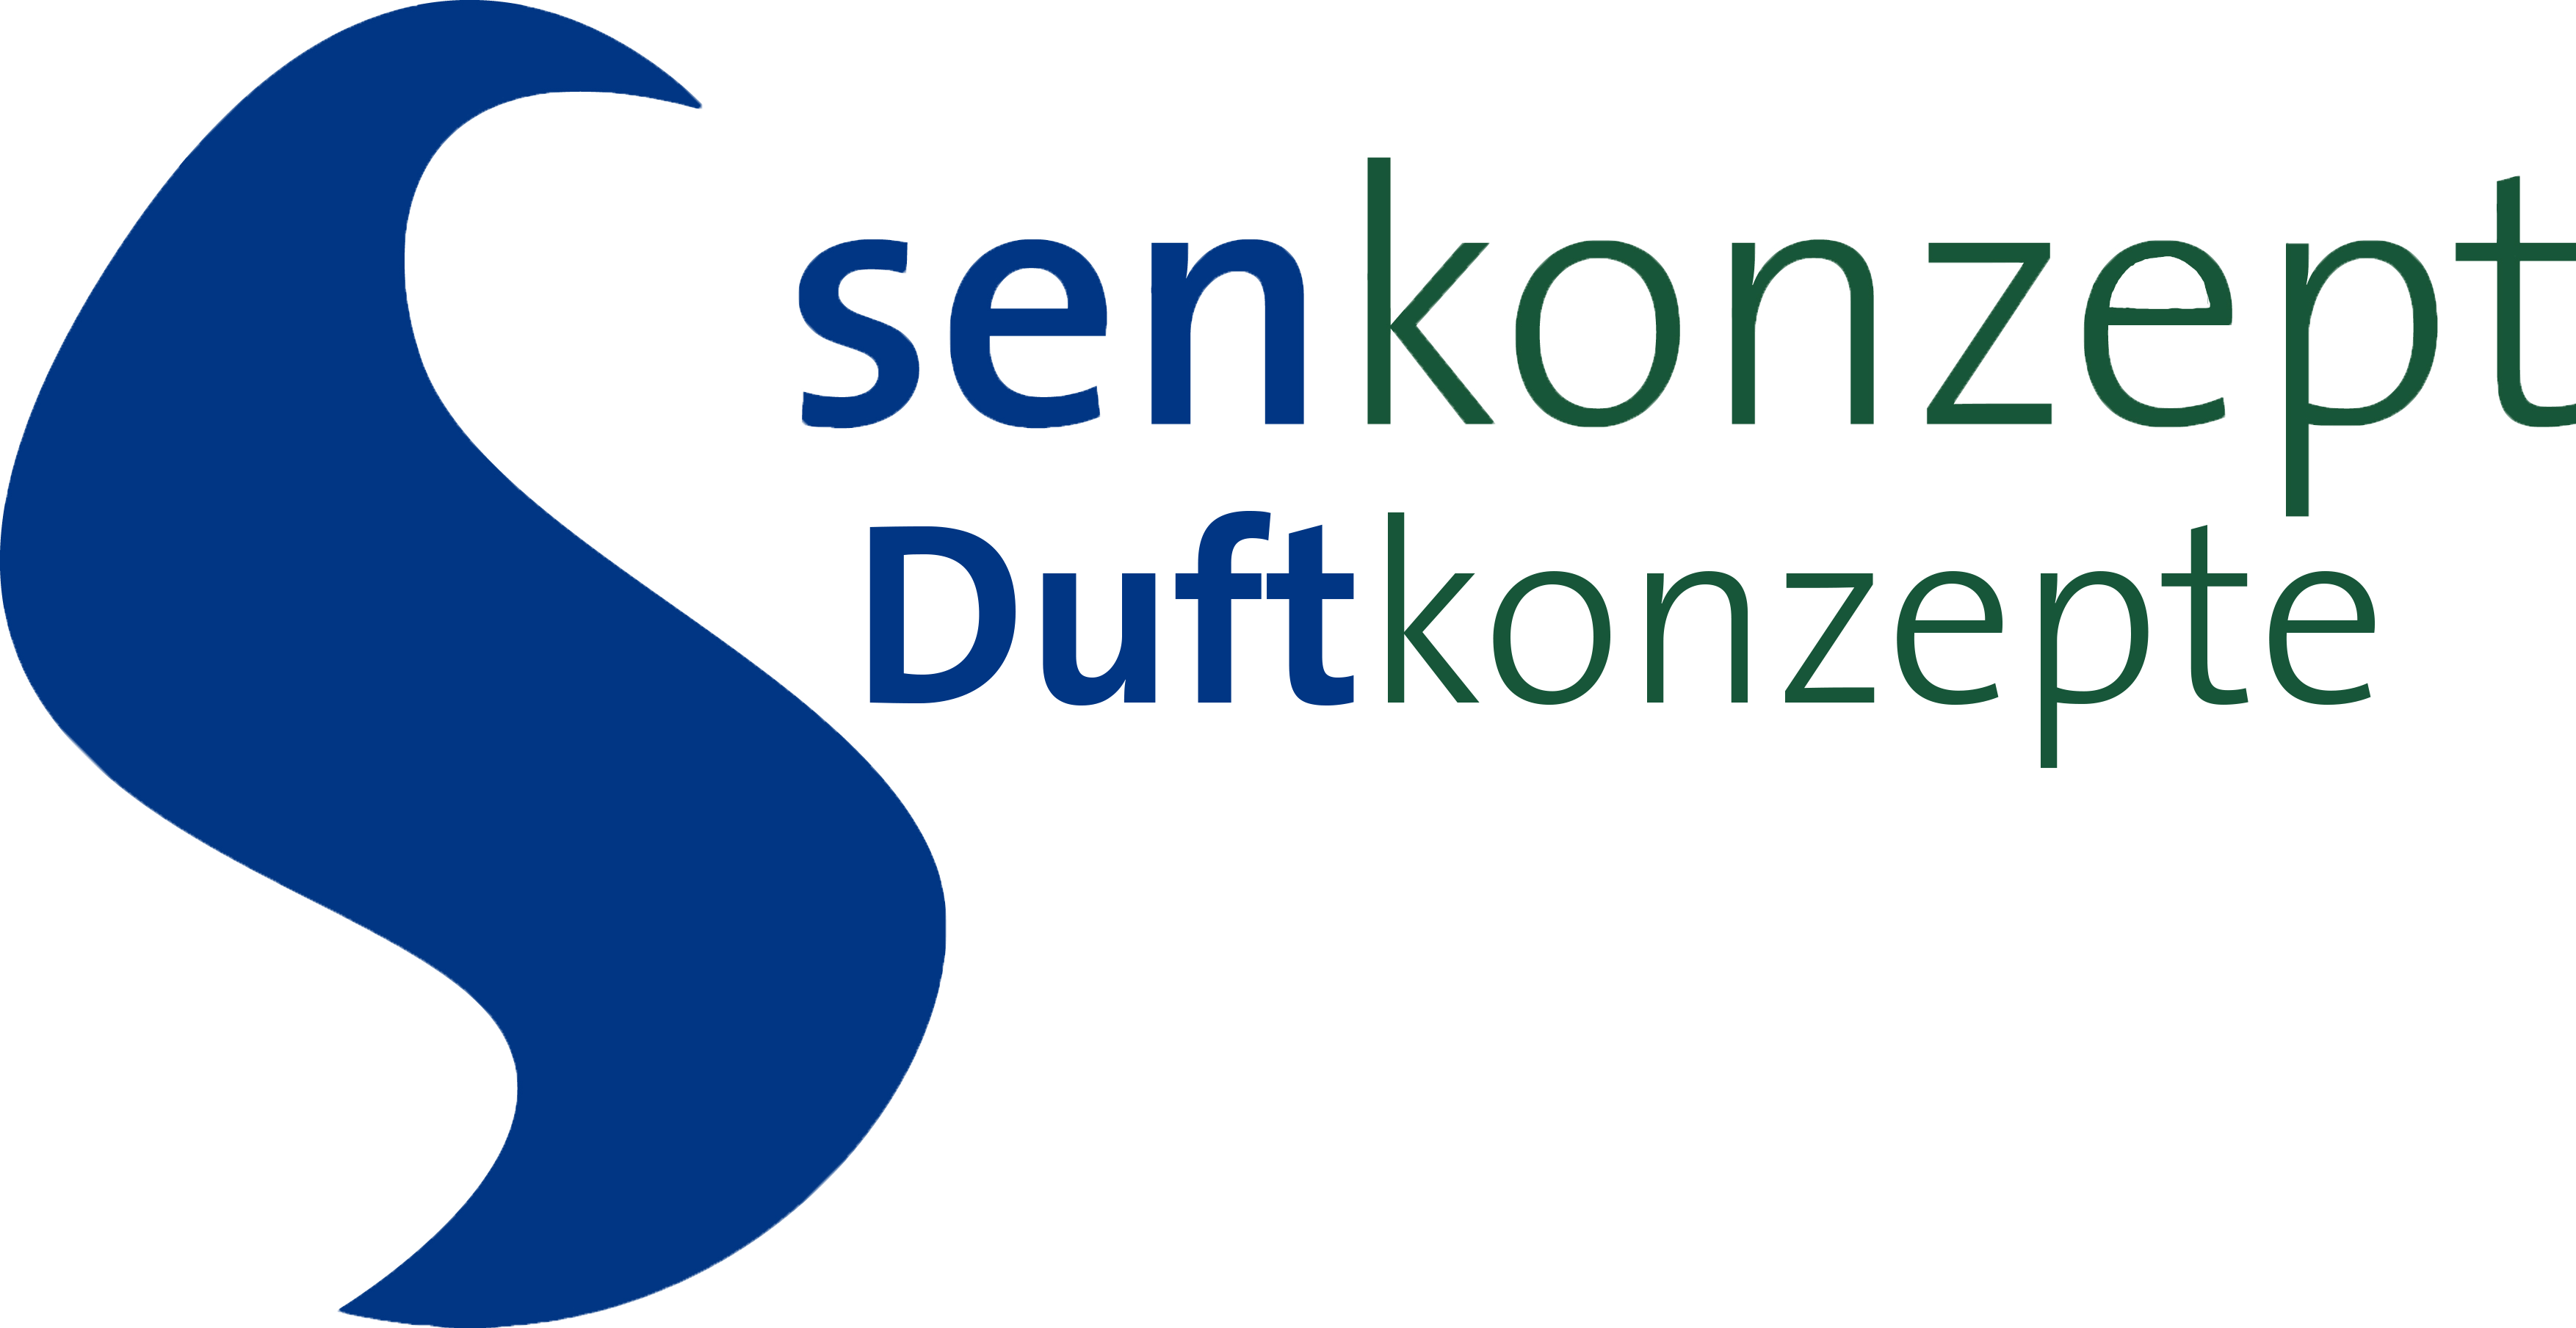 Senkonzept Duftkonzepte Logo-1